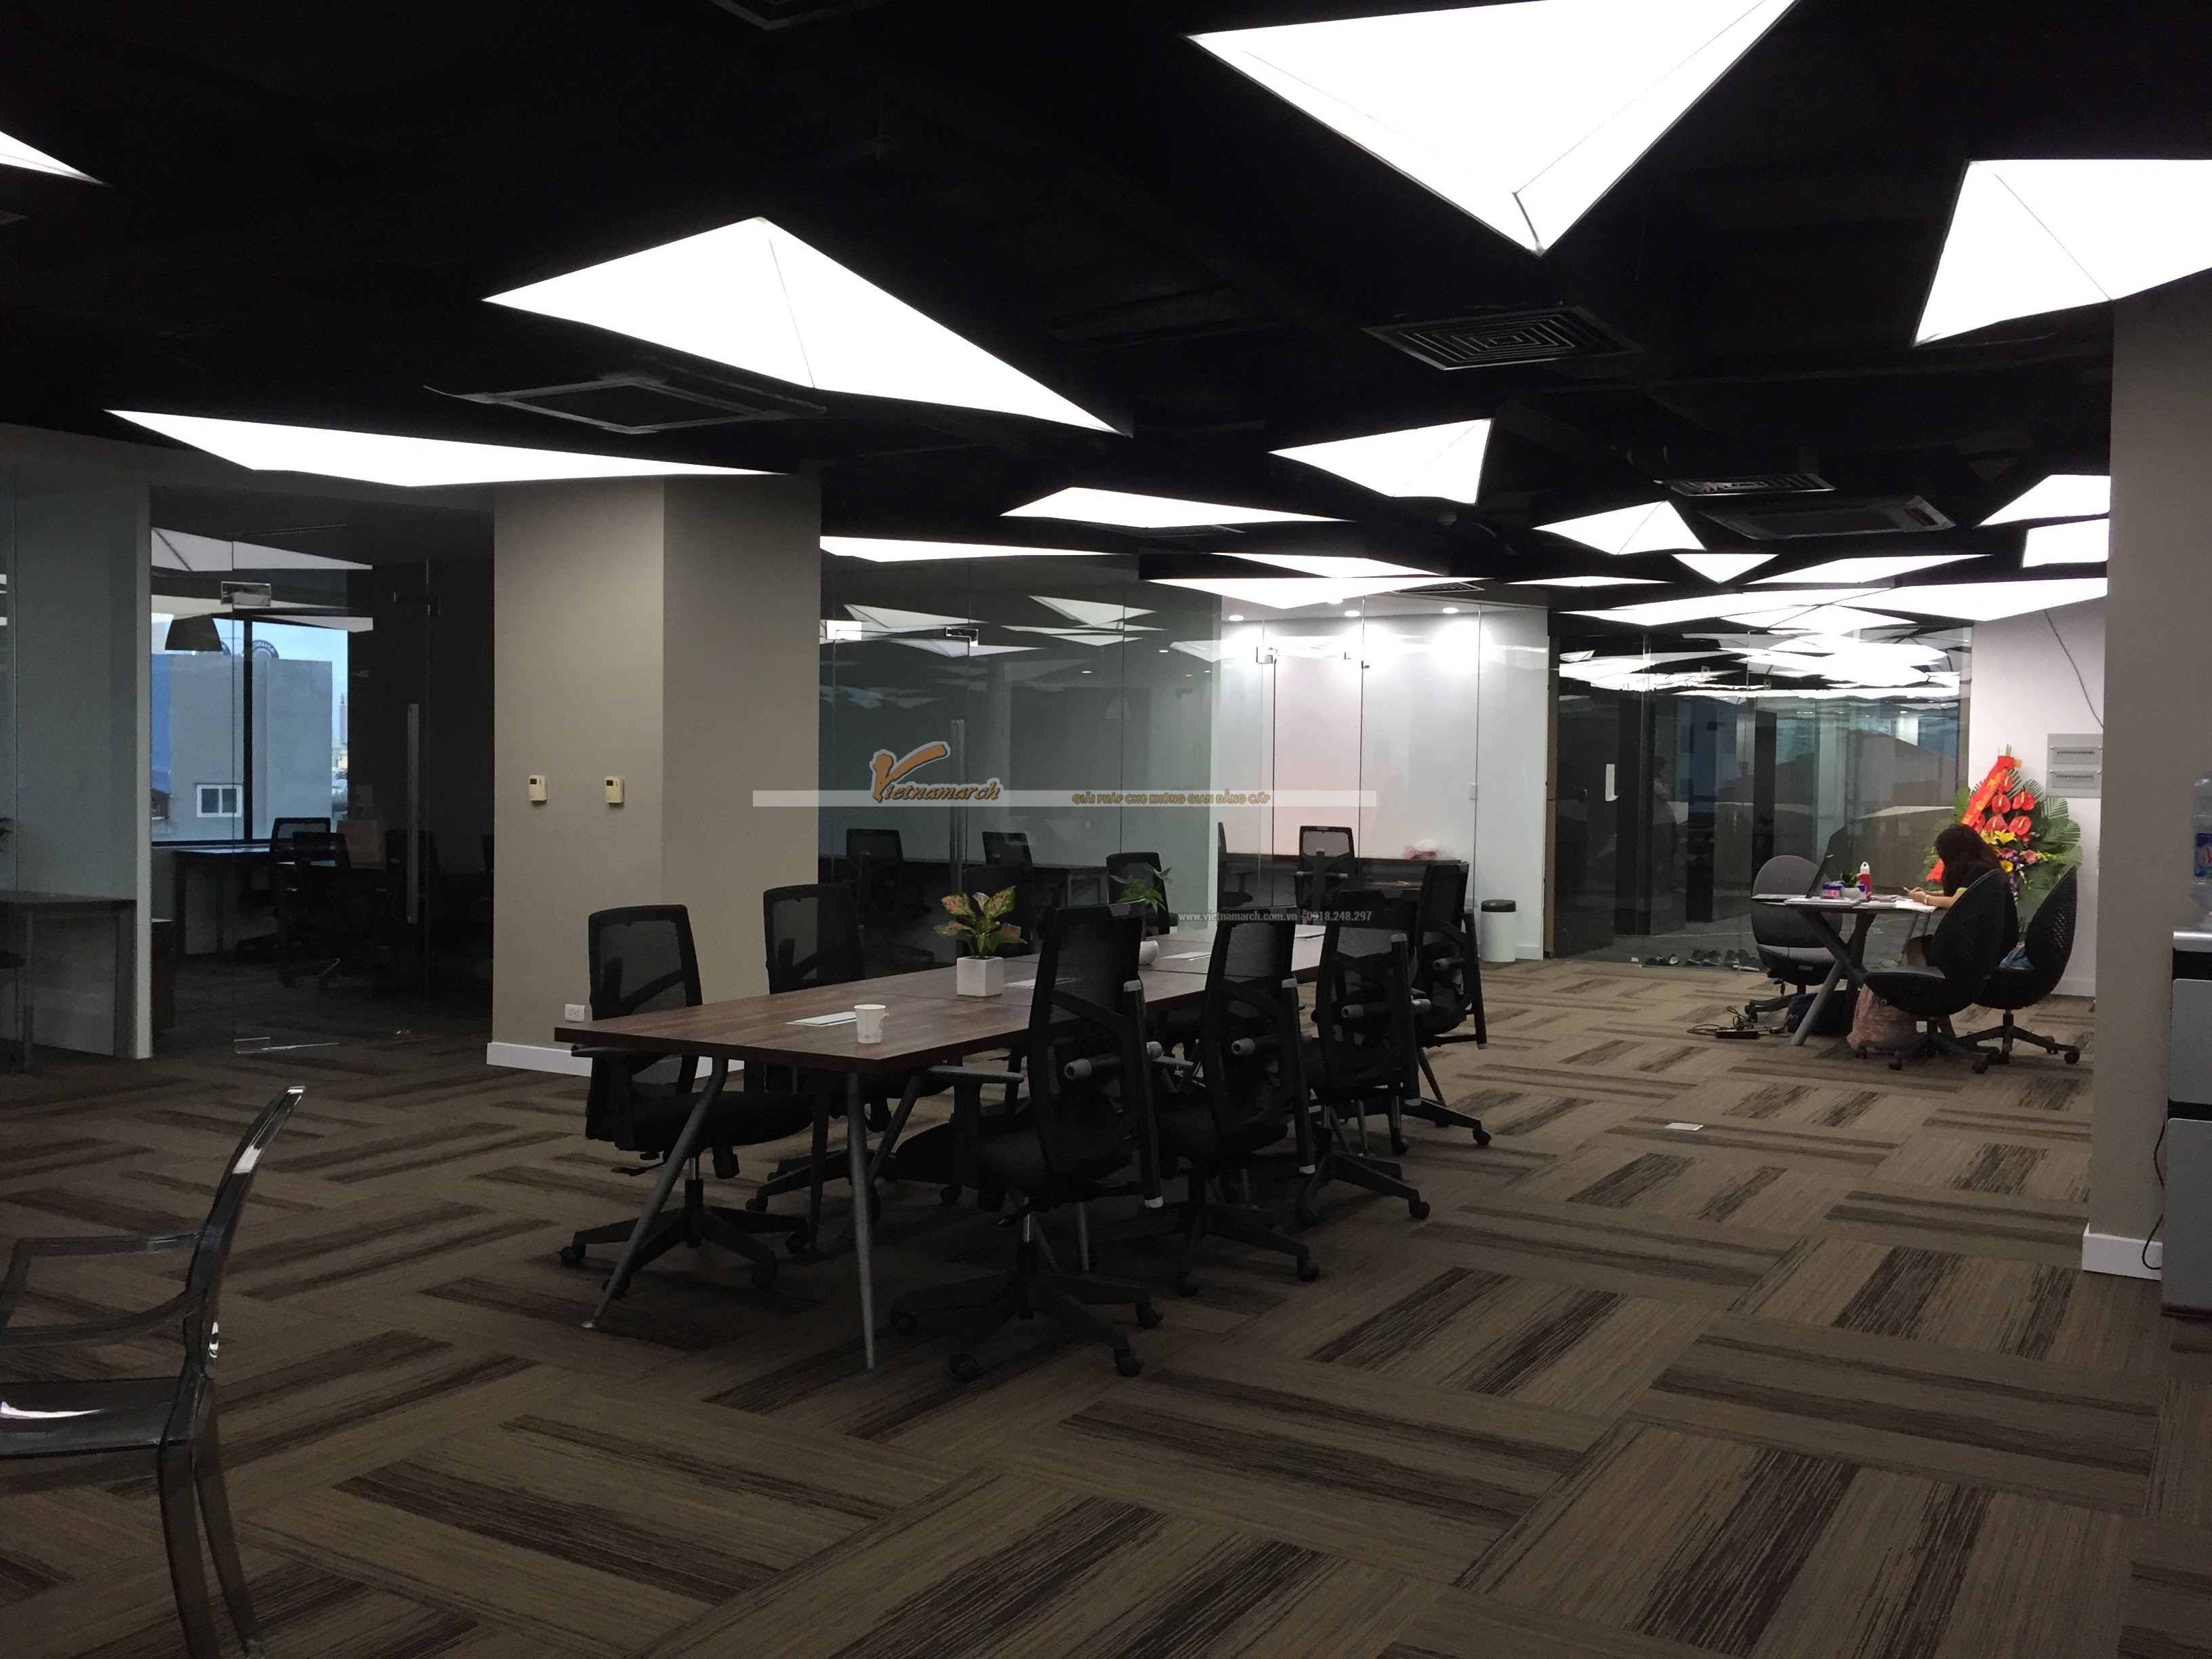 Thiết kế nội thất văn phòng Co-woking space hiện đại tầng 5 Kim Mã- Nhân tố thúc đẩy Start-up thành công > Thiết kế nội thất văn phòng